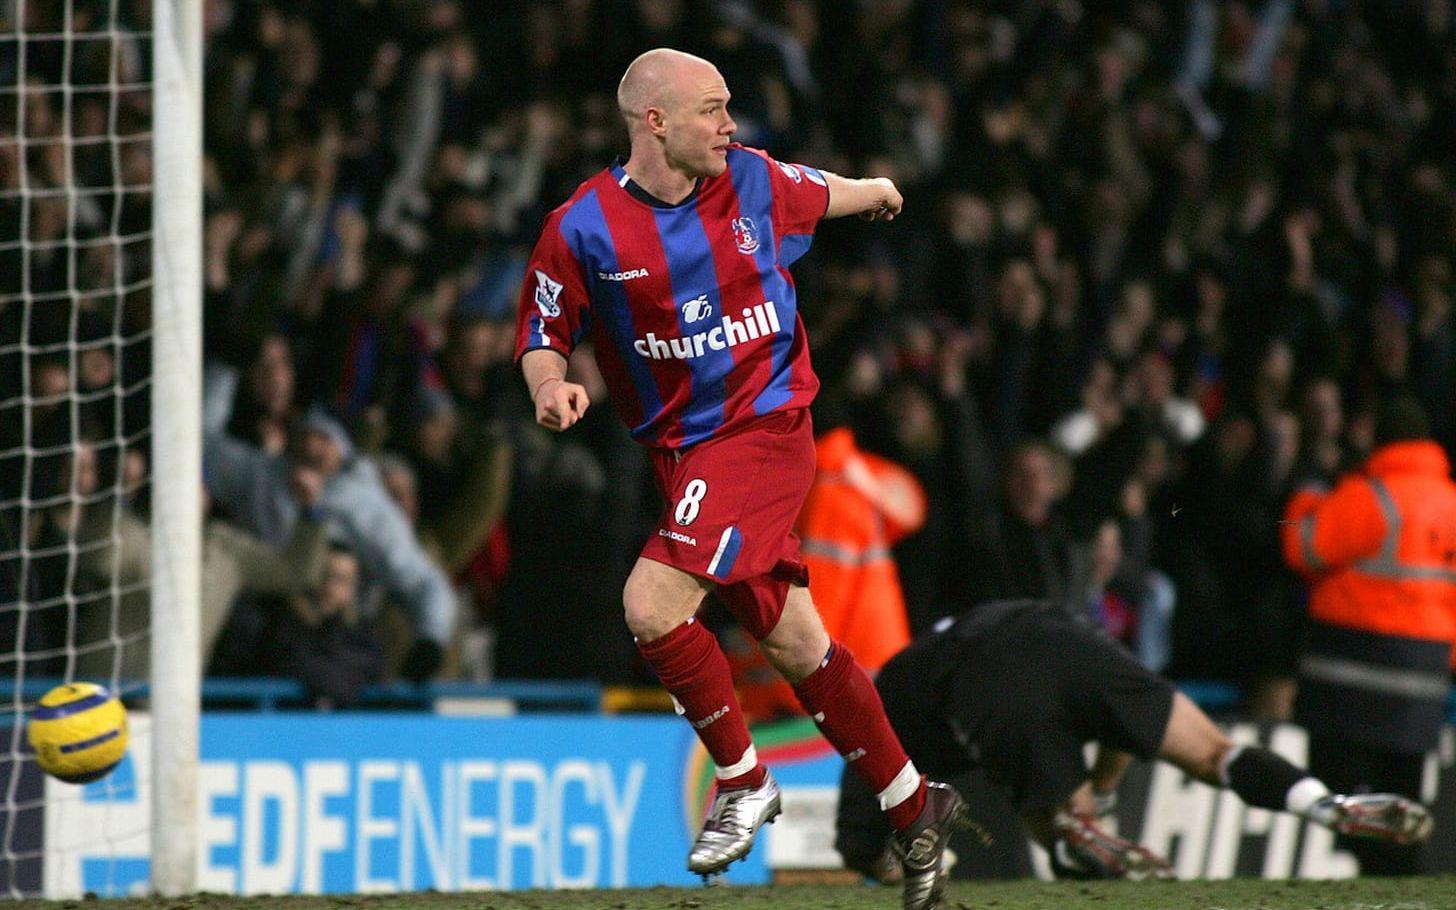 SUCCÈN. Andy Johnson gjorde 21 mål för nykomlingen Crystal Palace säsongen 2004-2005. Målformen tog honom hela vägen till det engelska landslaget, där han gjorde åtta framträdanden. Foto: TT